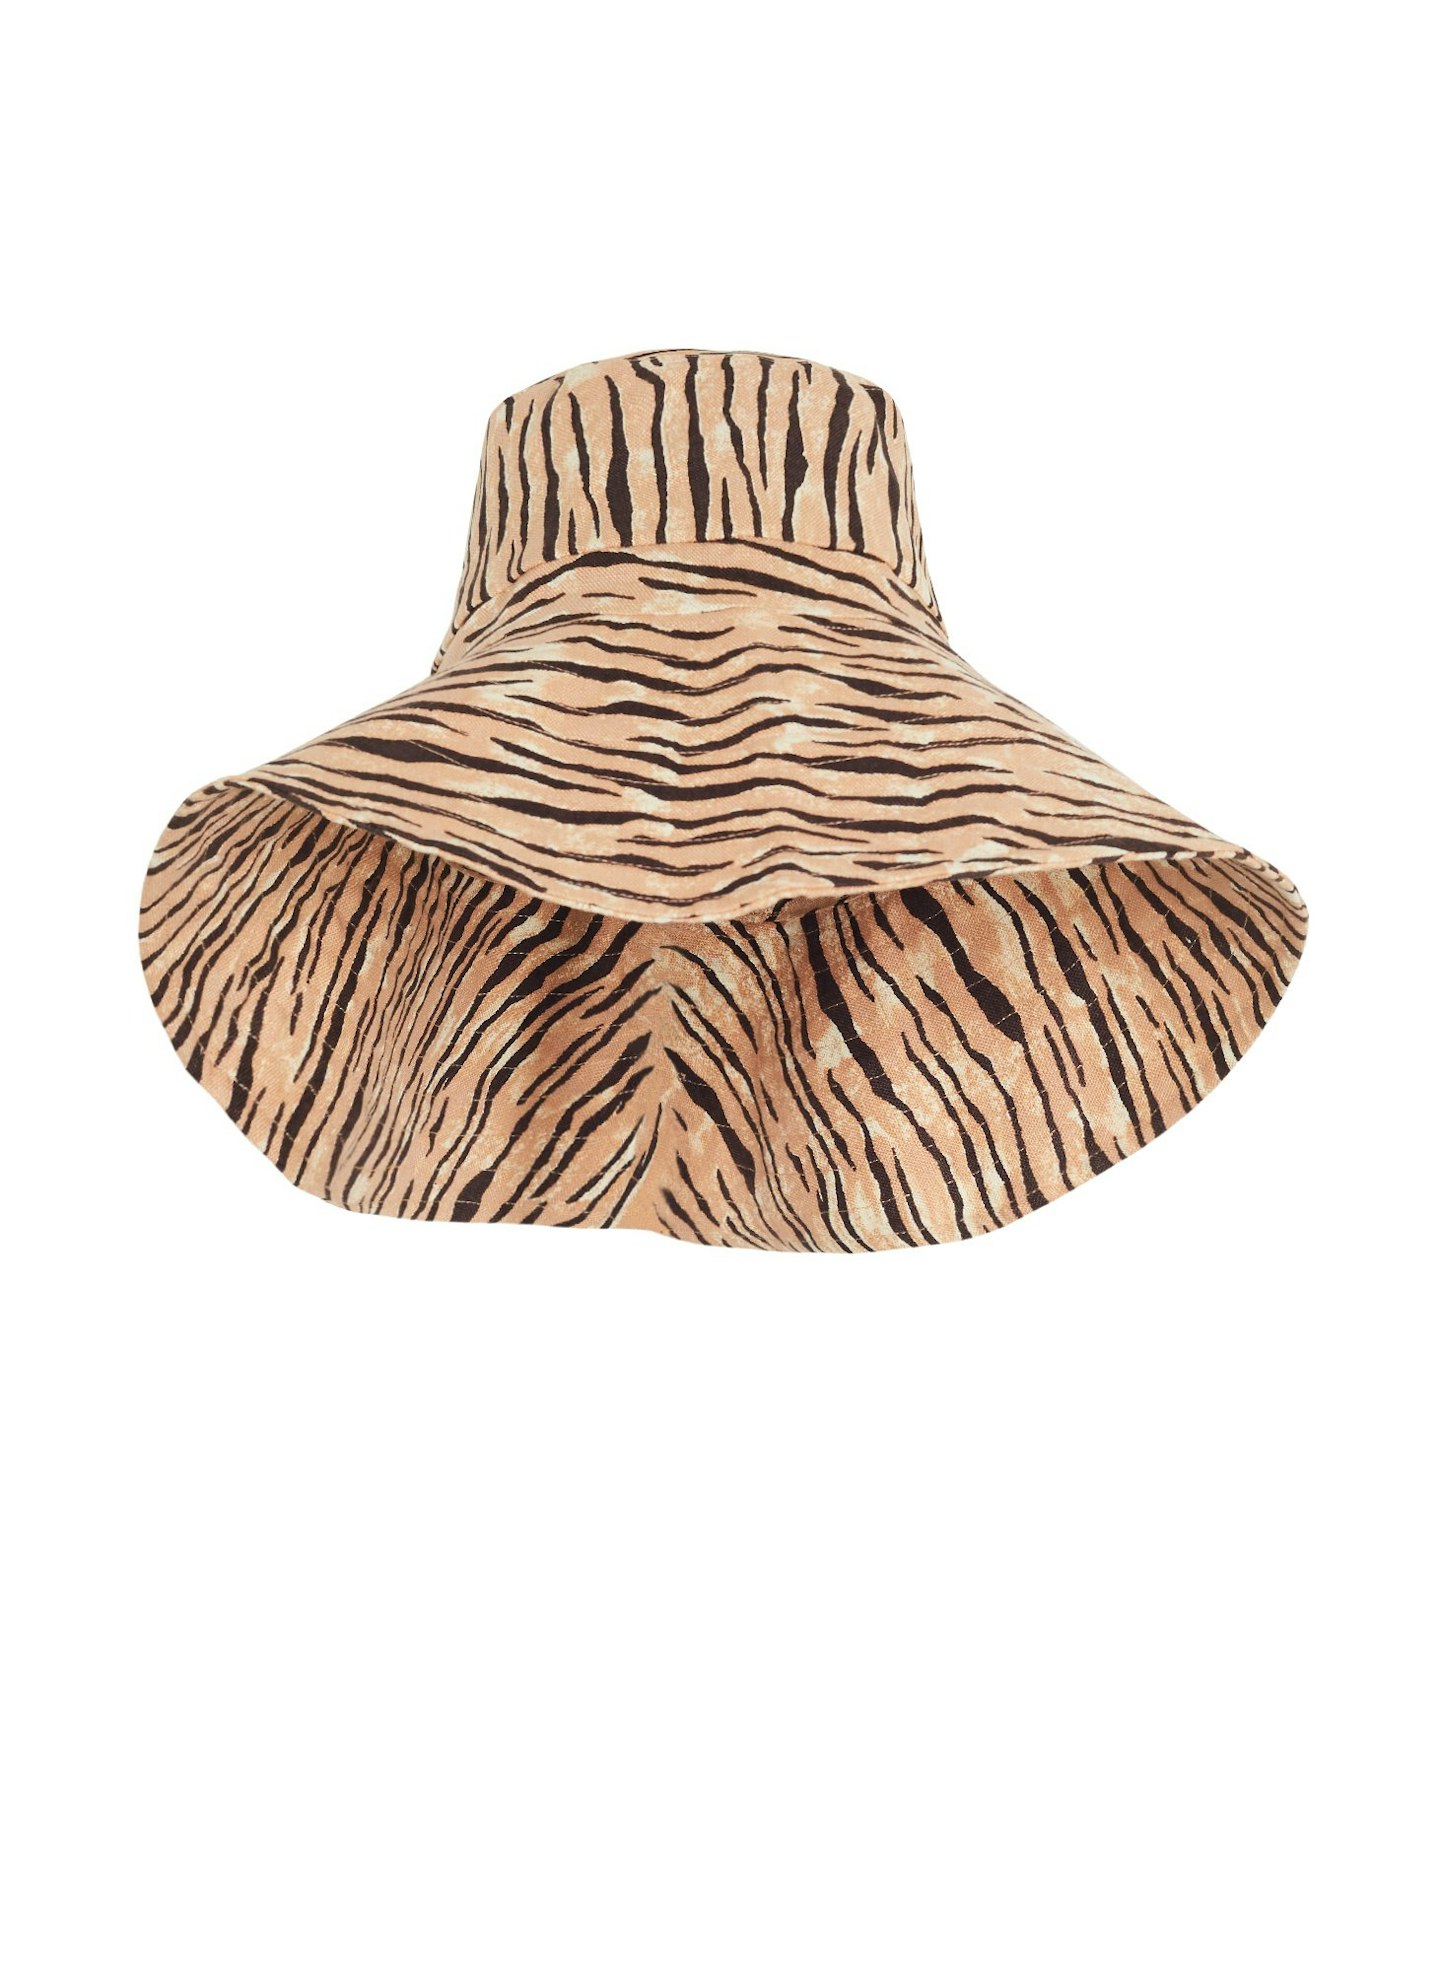 Faithfull The Brand, Frederikke Sun Hat, $89